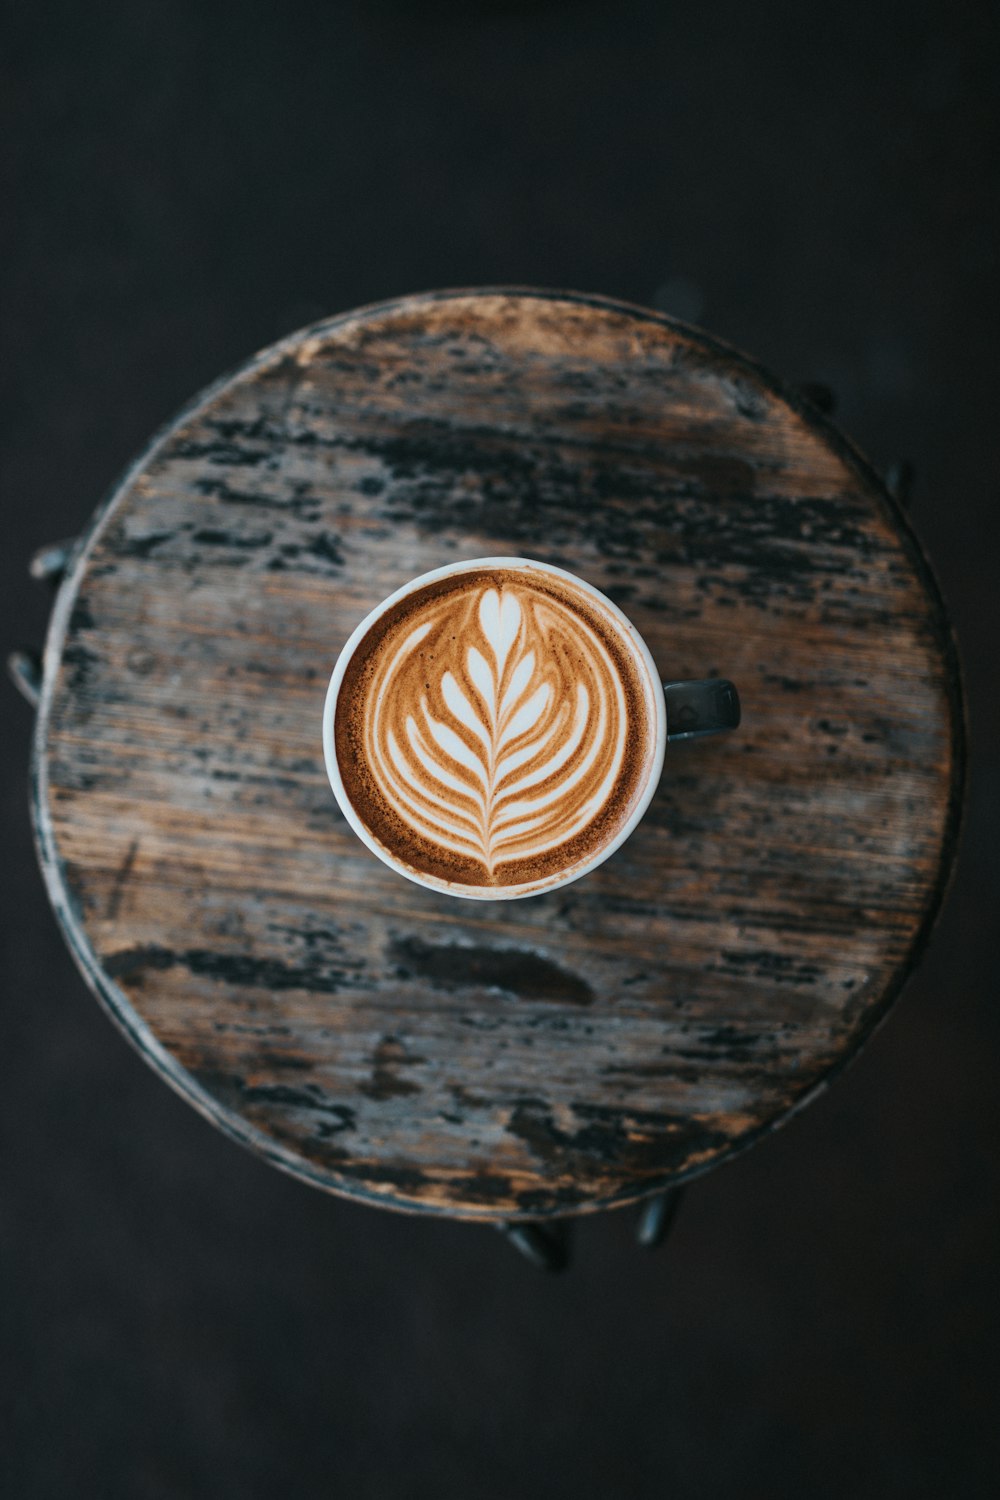 cappuccino coffee in mug